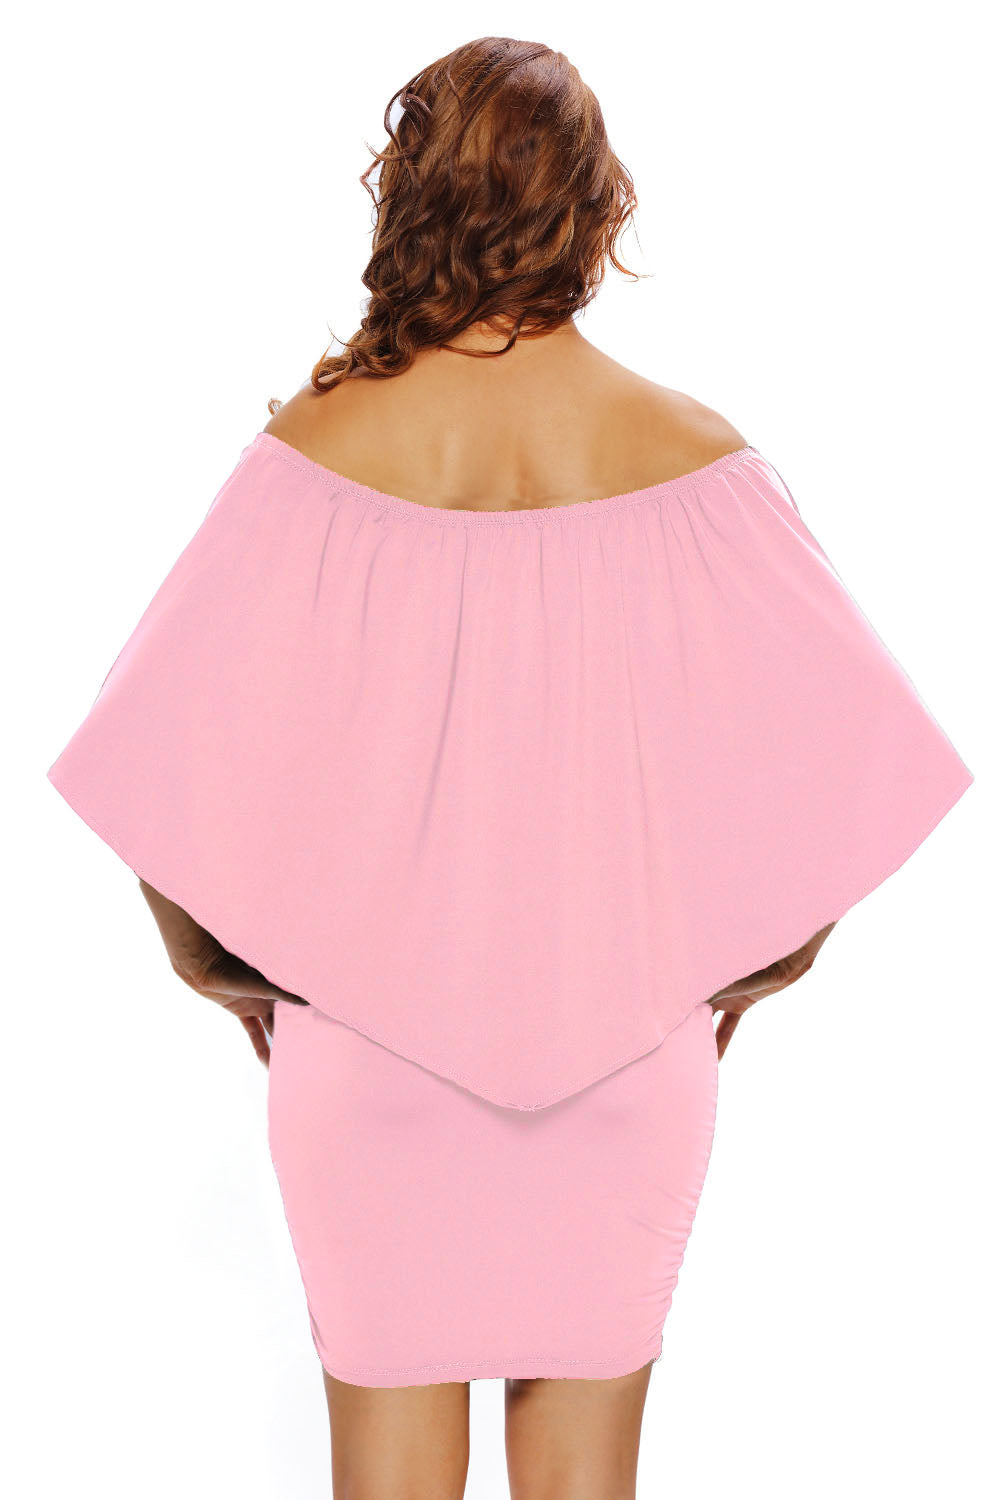 Rožnata mini pončo obleka z več plastemi